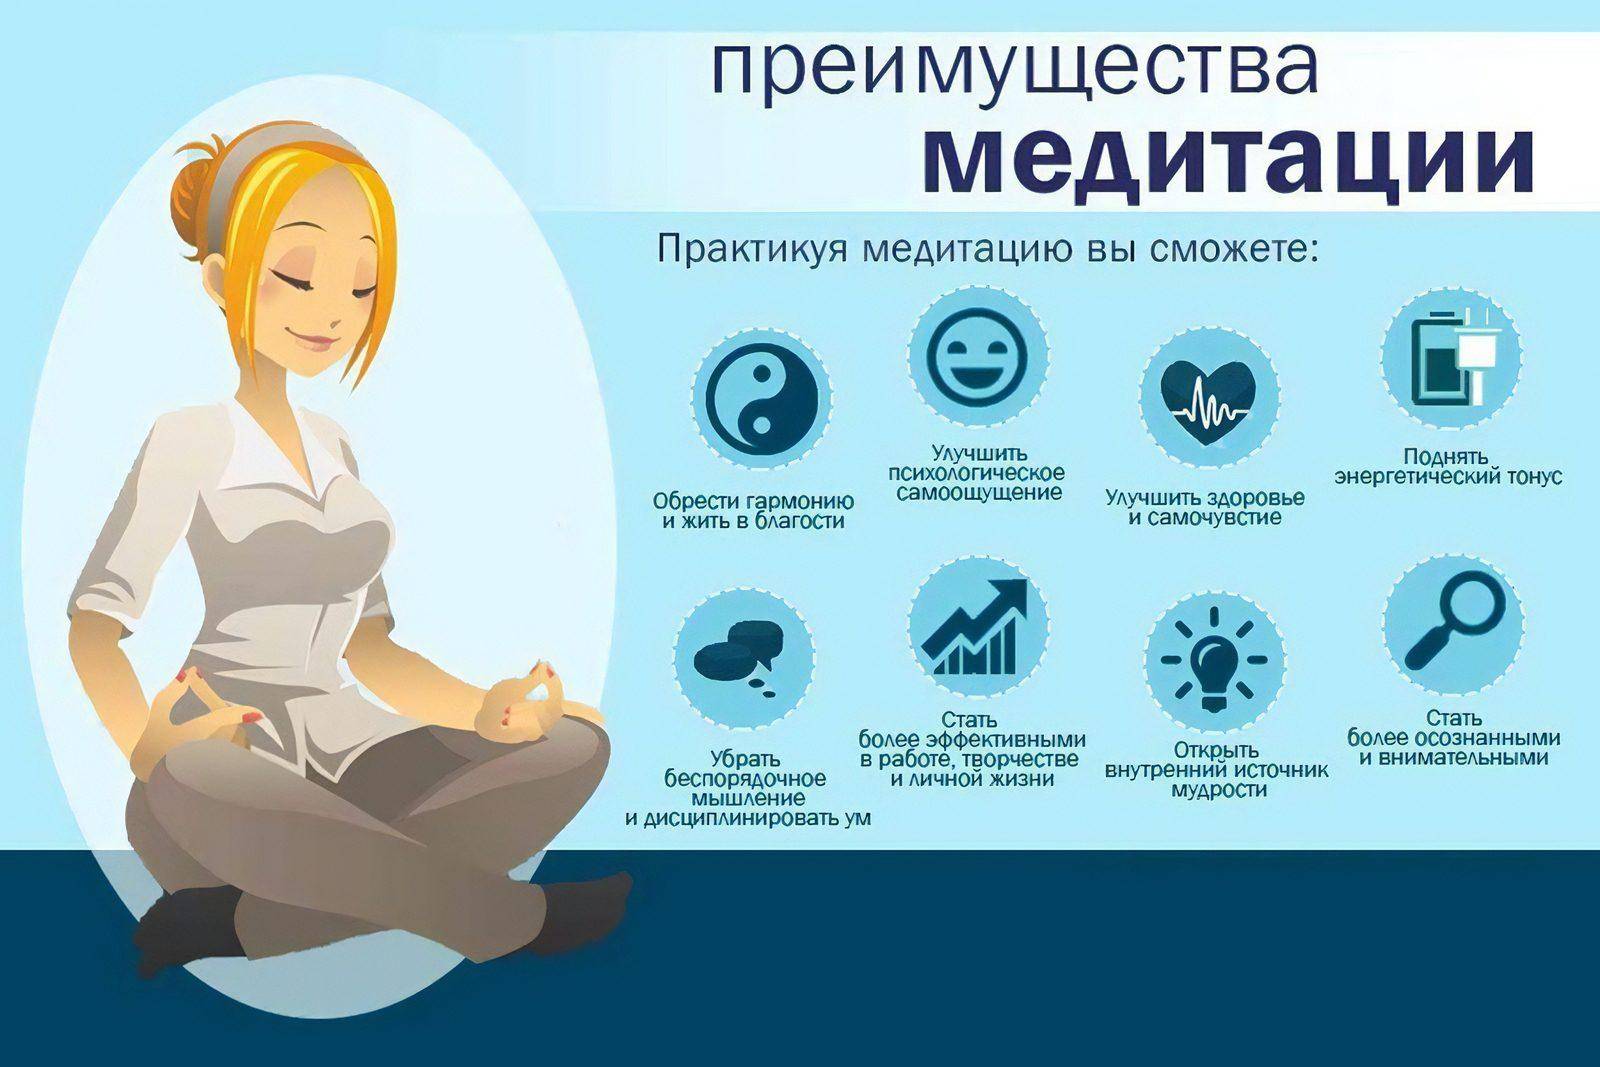 Вопросы медитации. Польза медитации. Для чего нужна медитация. Как медитировать. Как правильно медитировать.